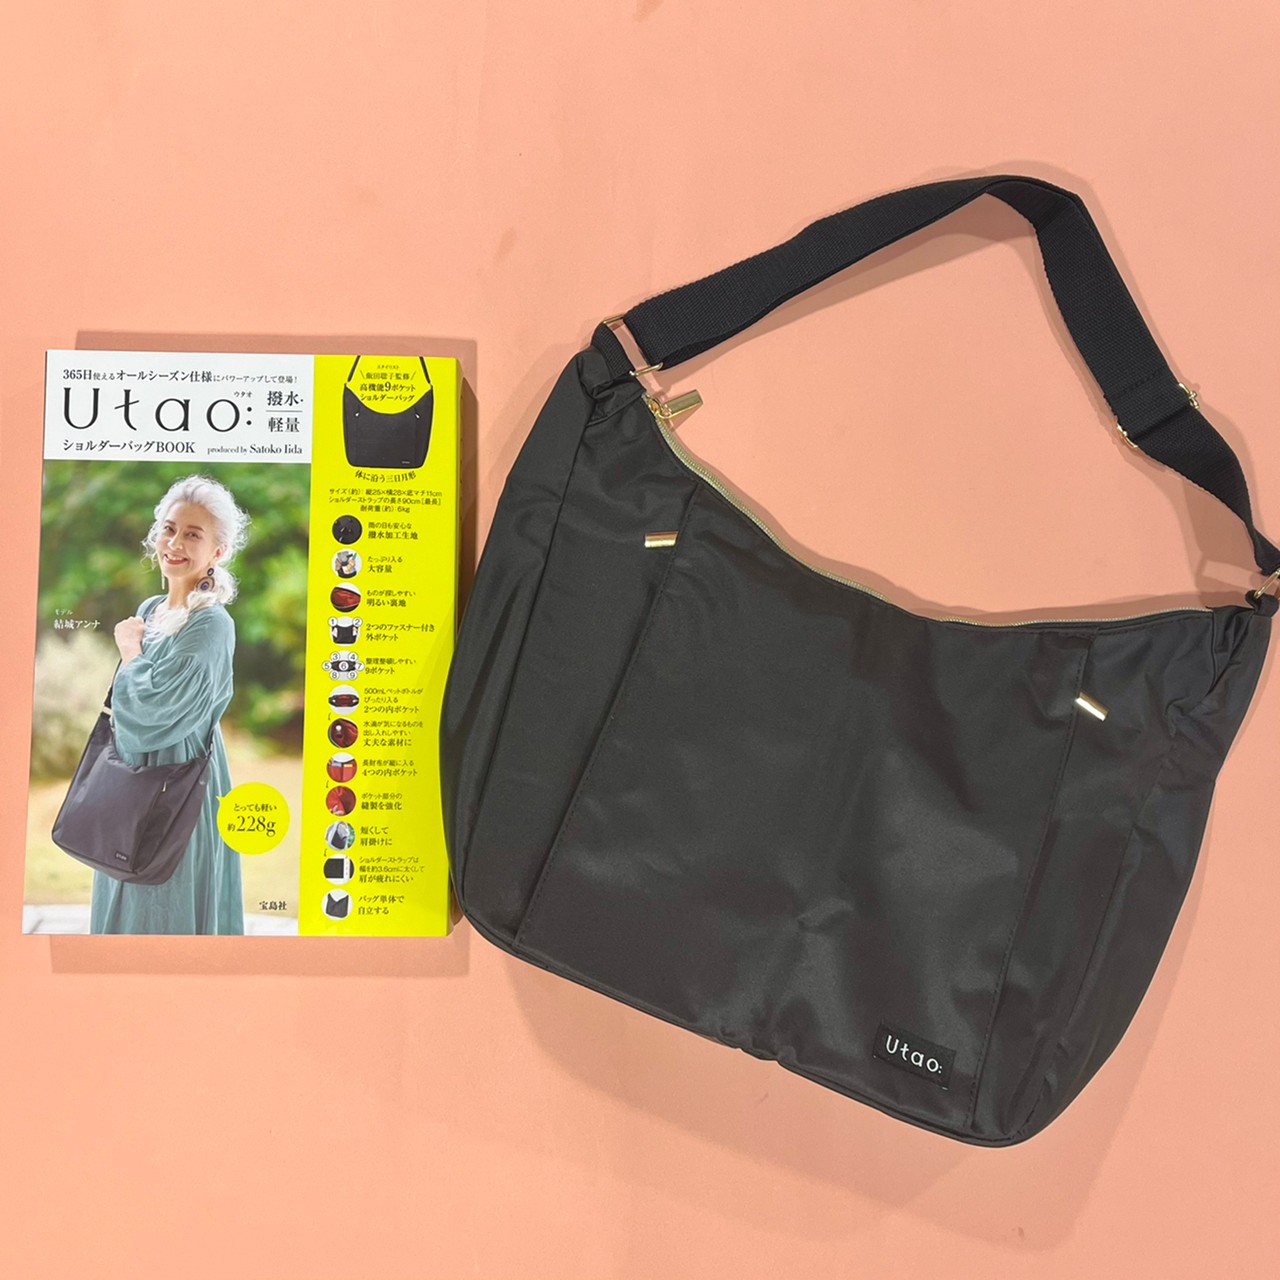 Utao: 撥水・軽量ショルダーバッグBOOKと撥水・軽量ショルダーバッグの画像